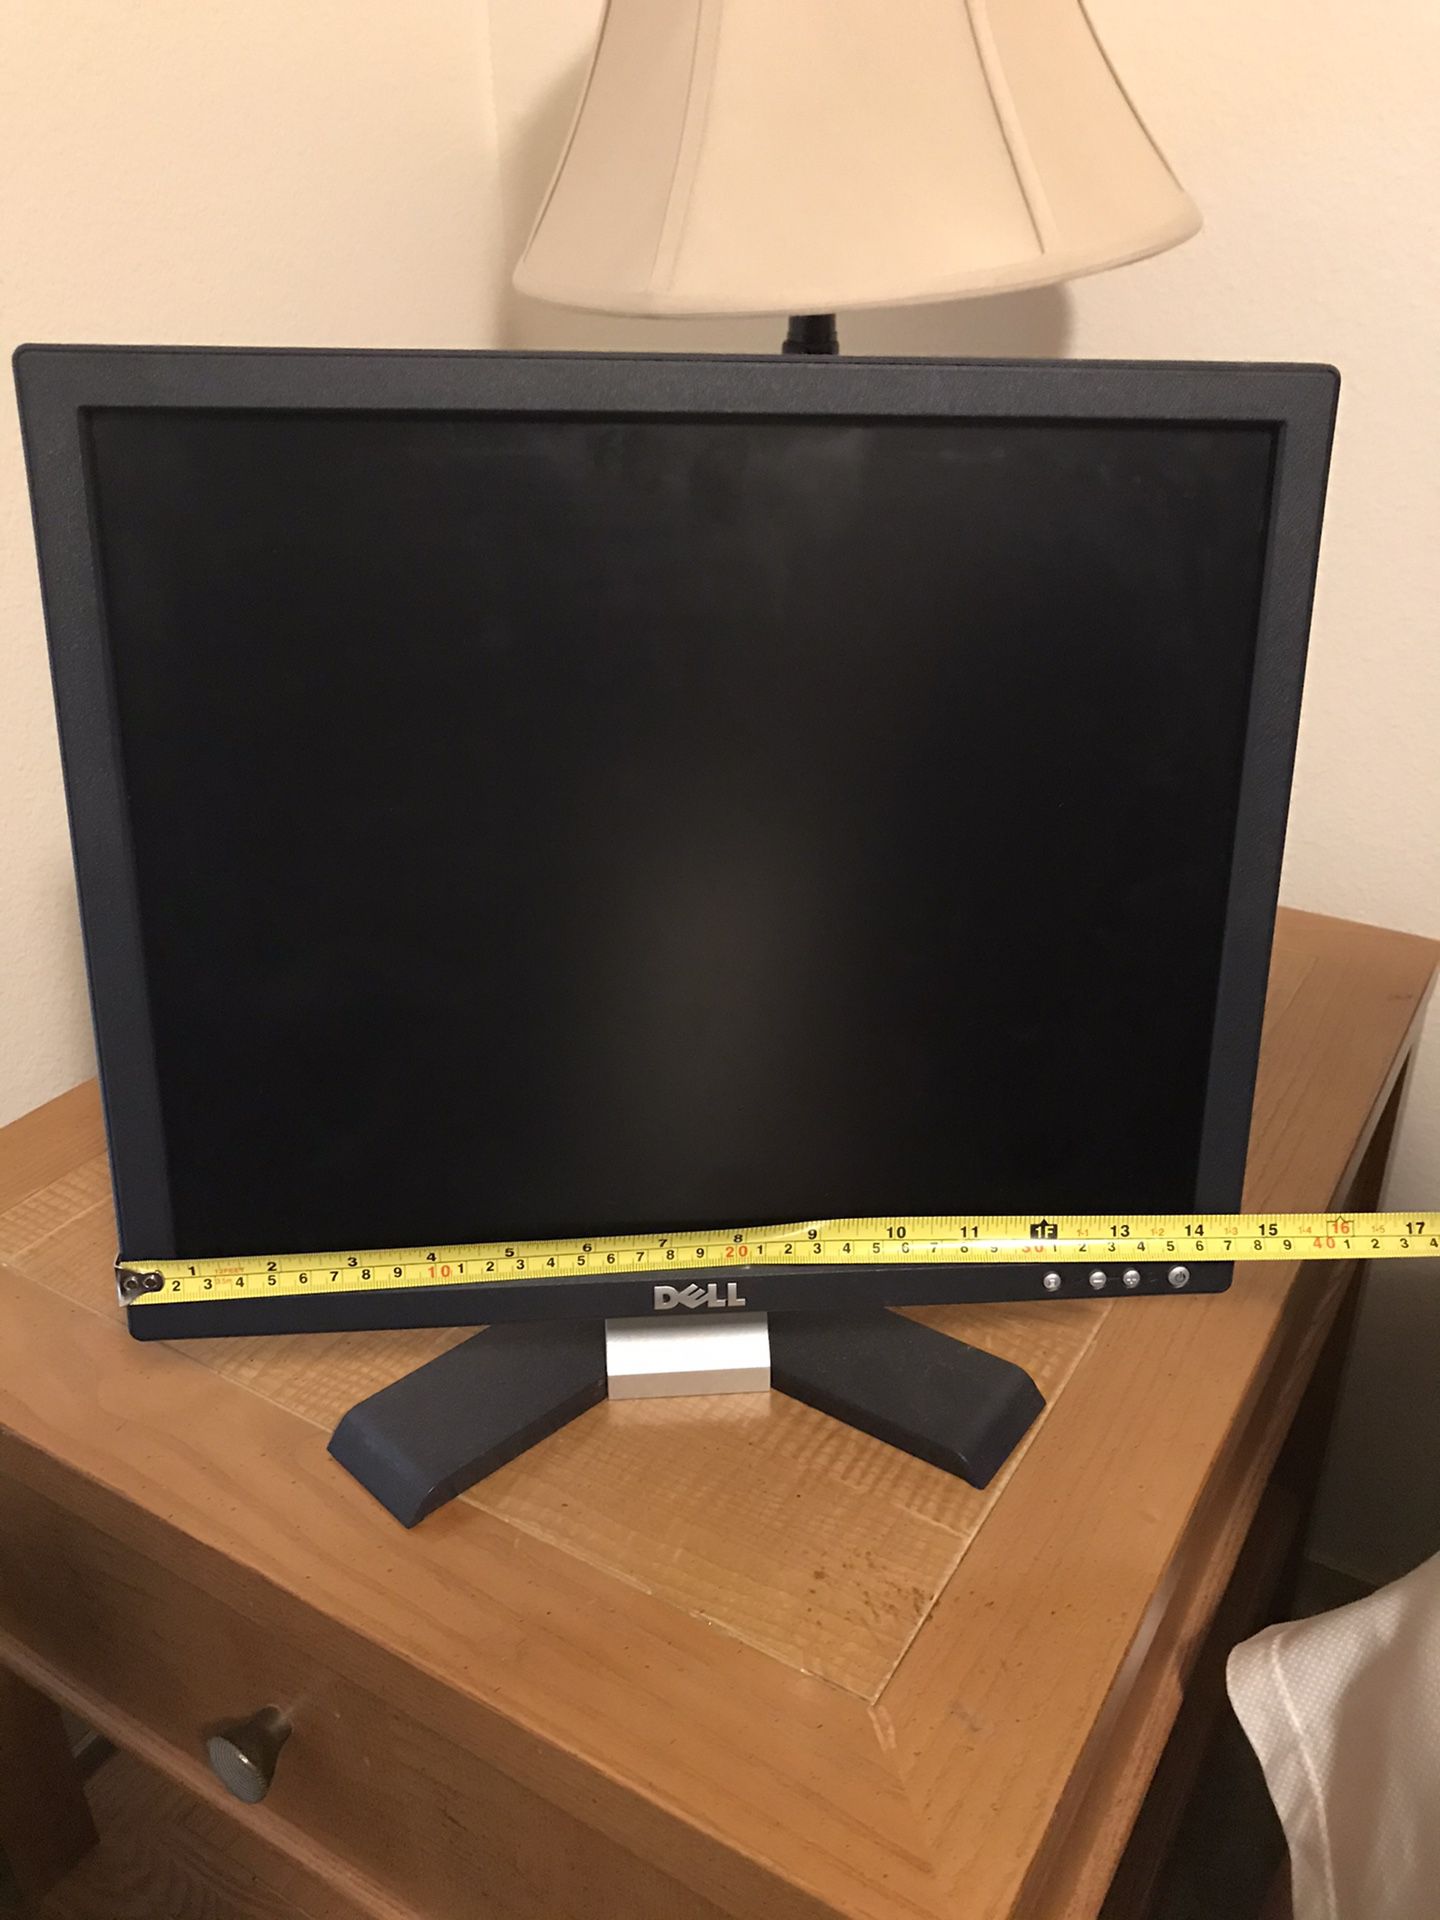 Small Dell computer monitor